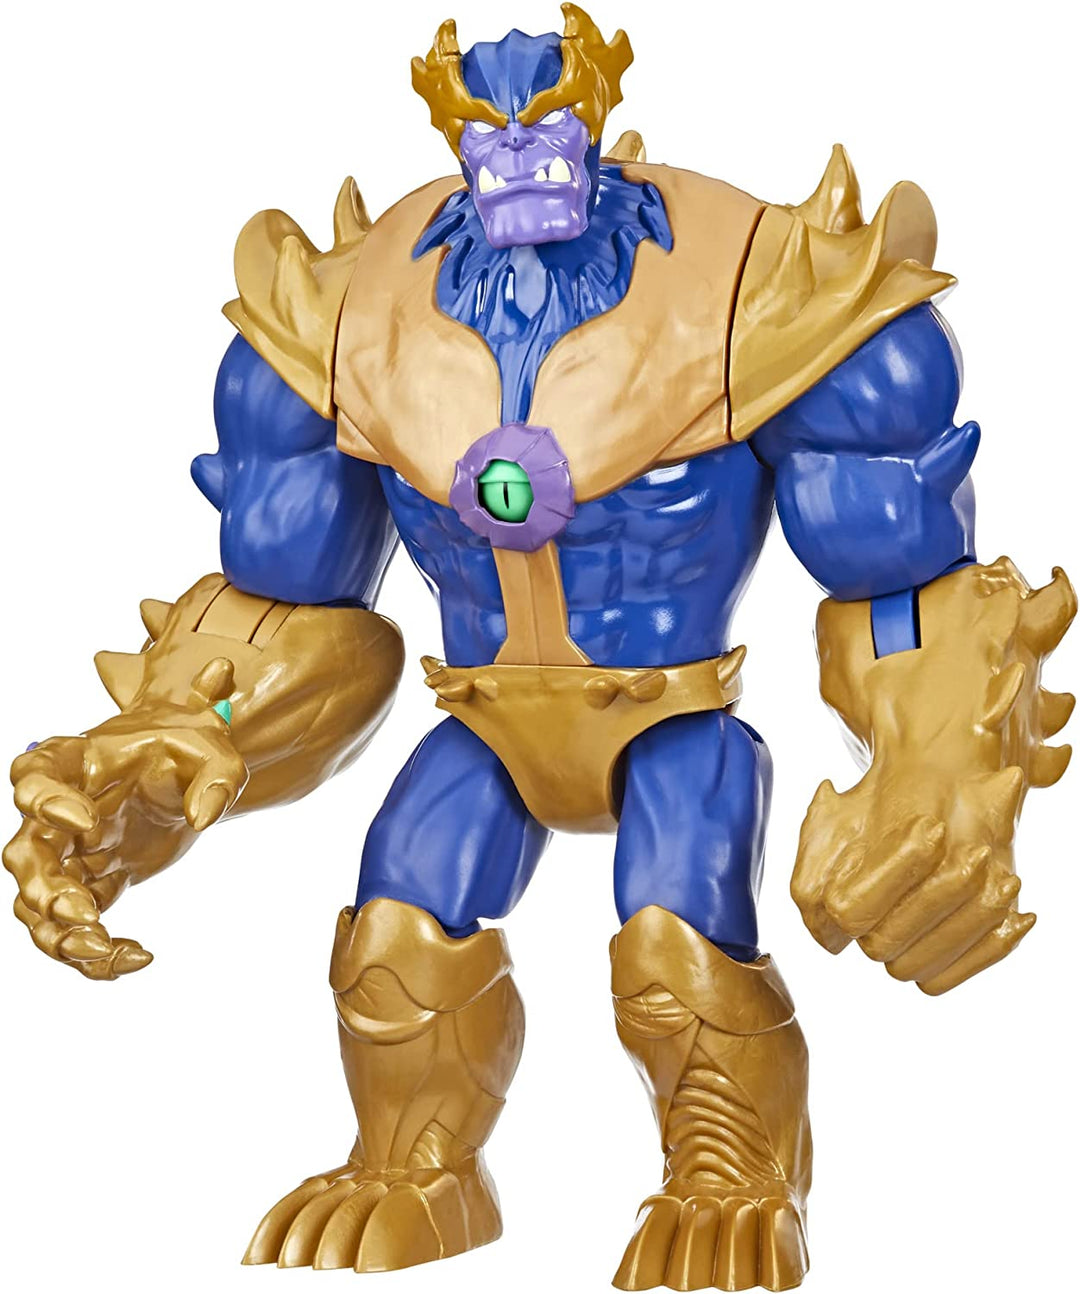 Hasbro Marvel Avengers Mech Strike Monster Hunters Monster Punch Thanos Spielzeug, 22.